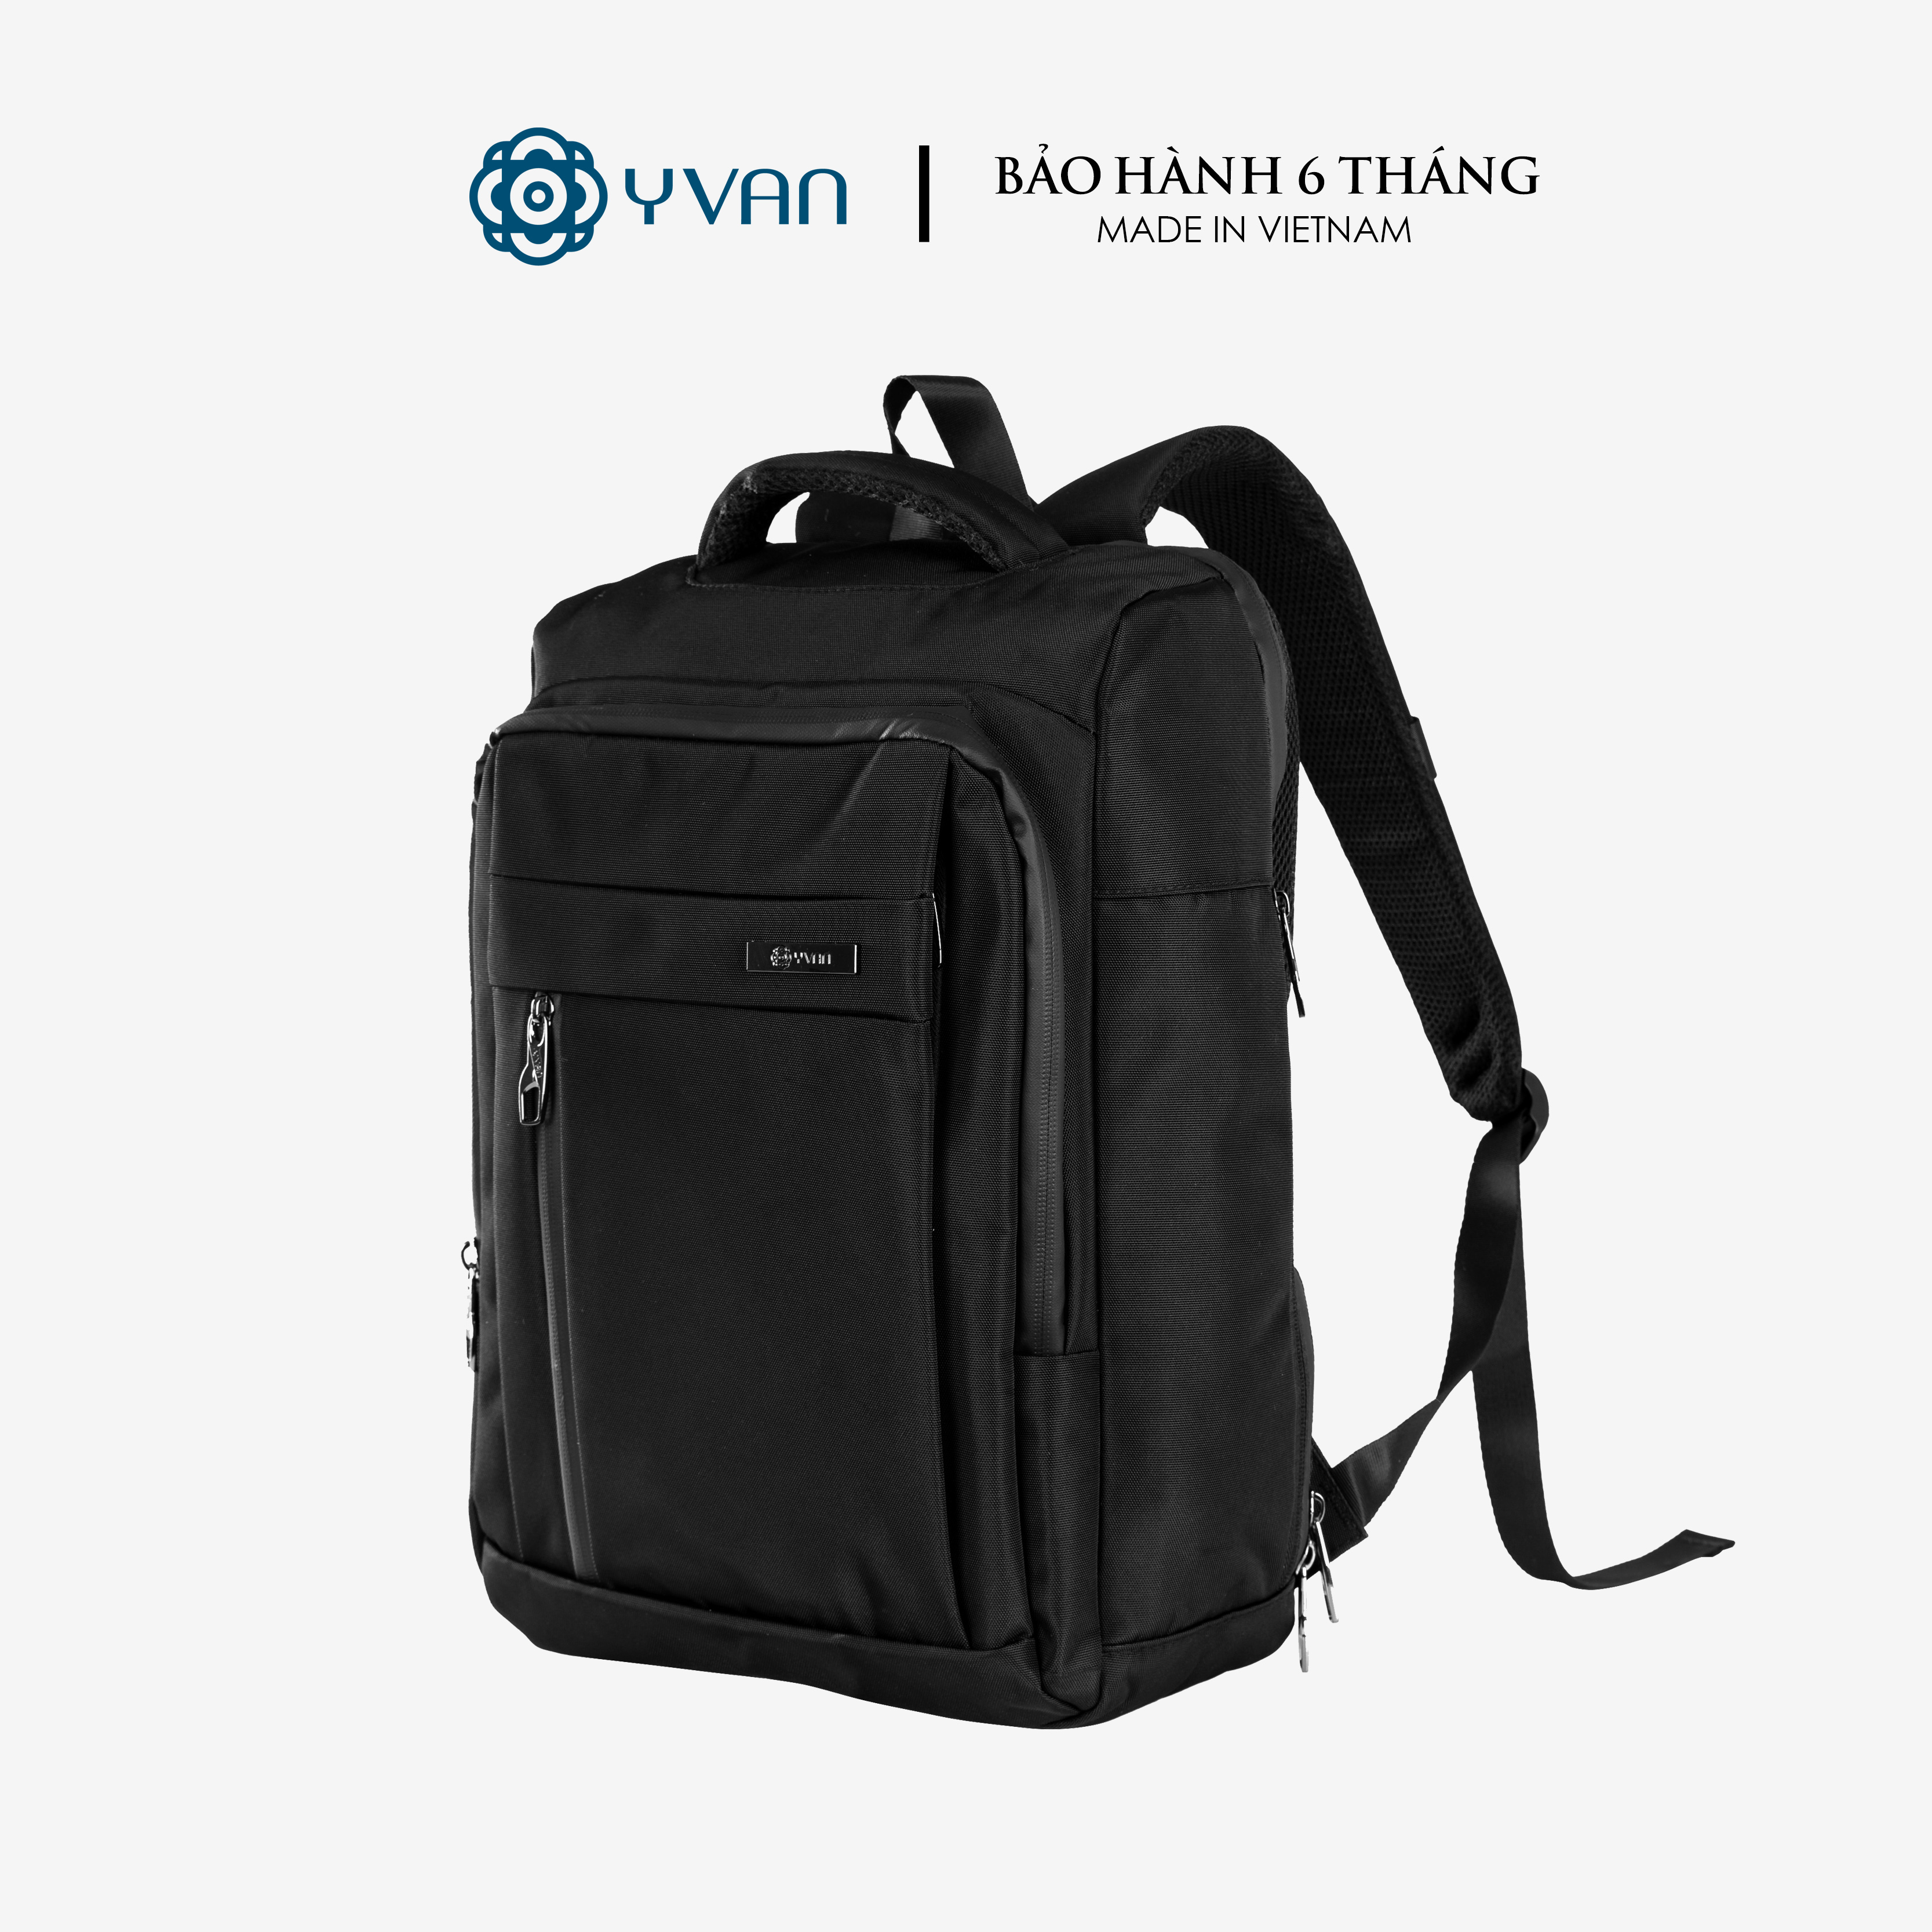 Balo laptop sức chứa lớn vải fabric cao cấp hàng chính hãng YVan 0516-1